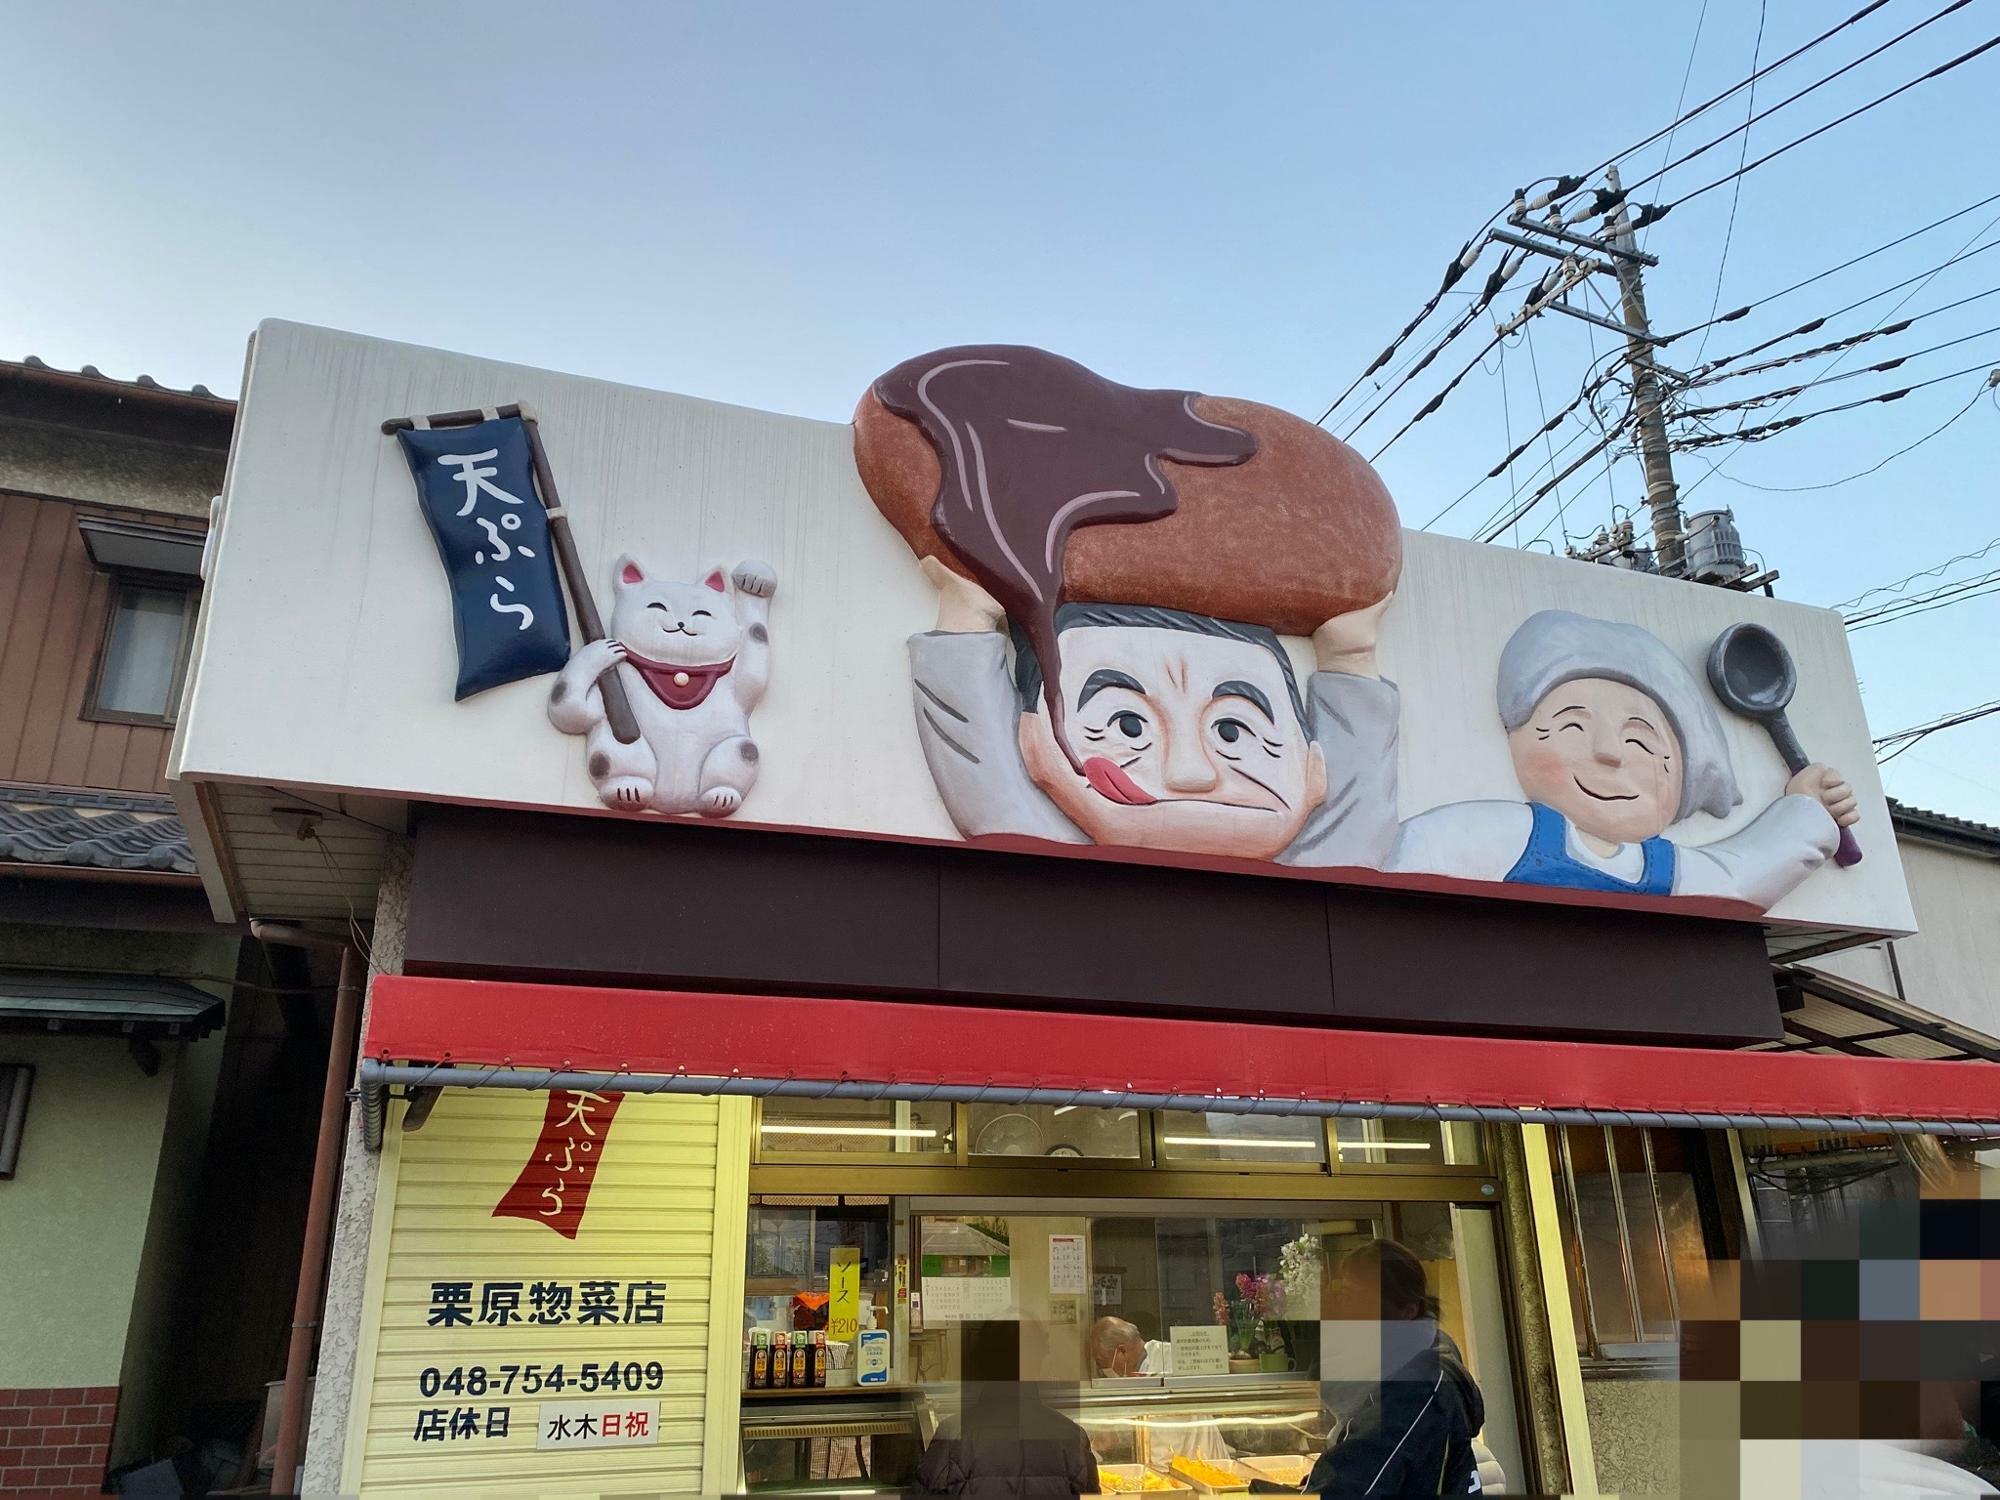 コロッケが美味しい「栗原惣菜店」